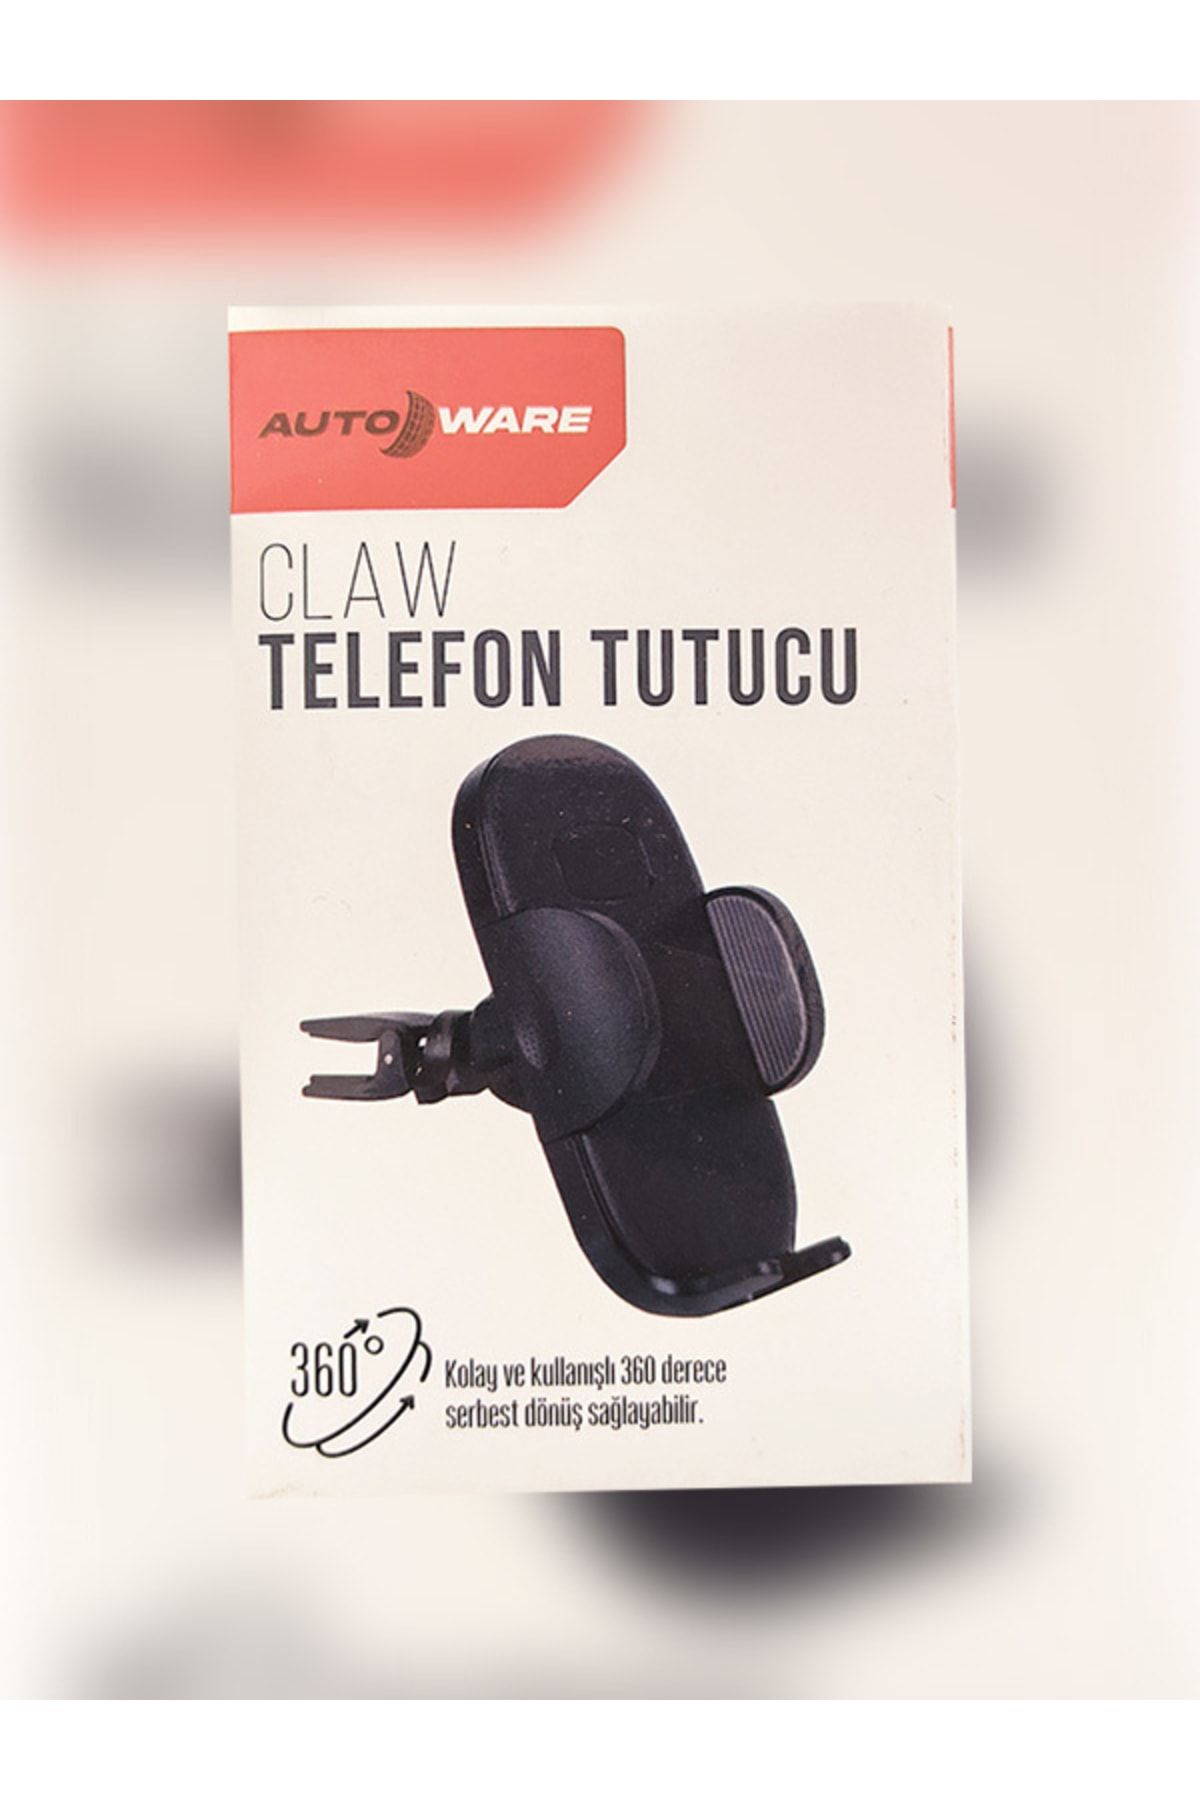 Autoware Auto Ware Telefon Tutucu Araç Içi Akrobat Tlfnttc0 Fiyatı,  Yorumları - Trendyol